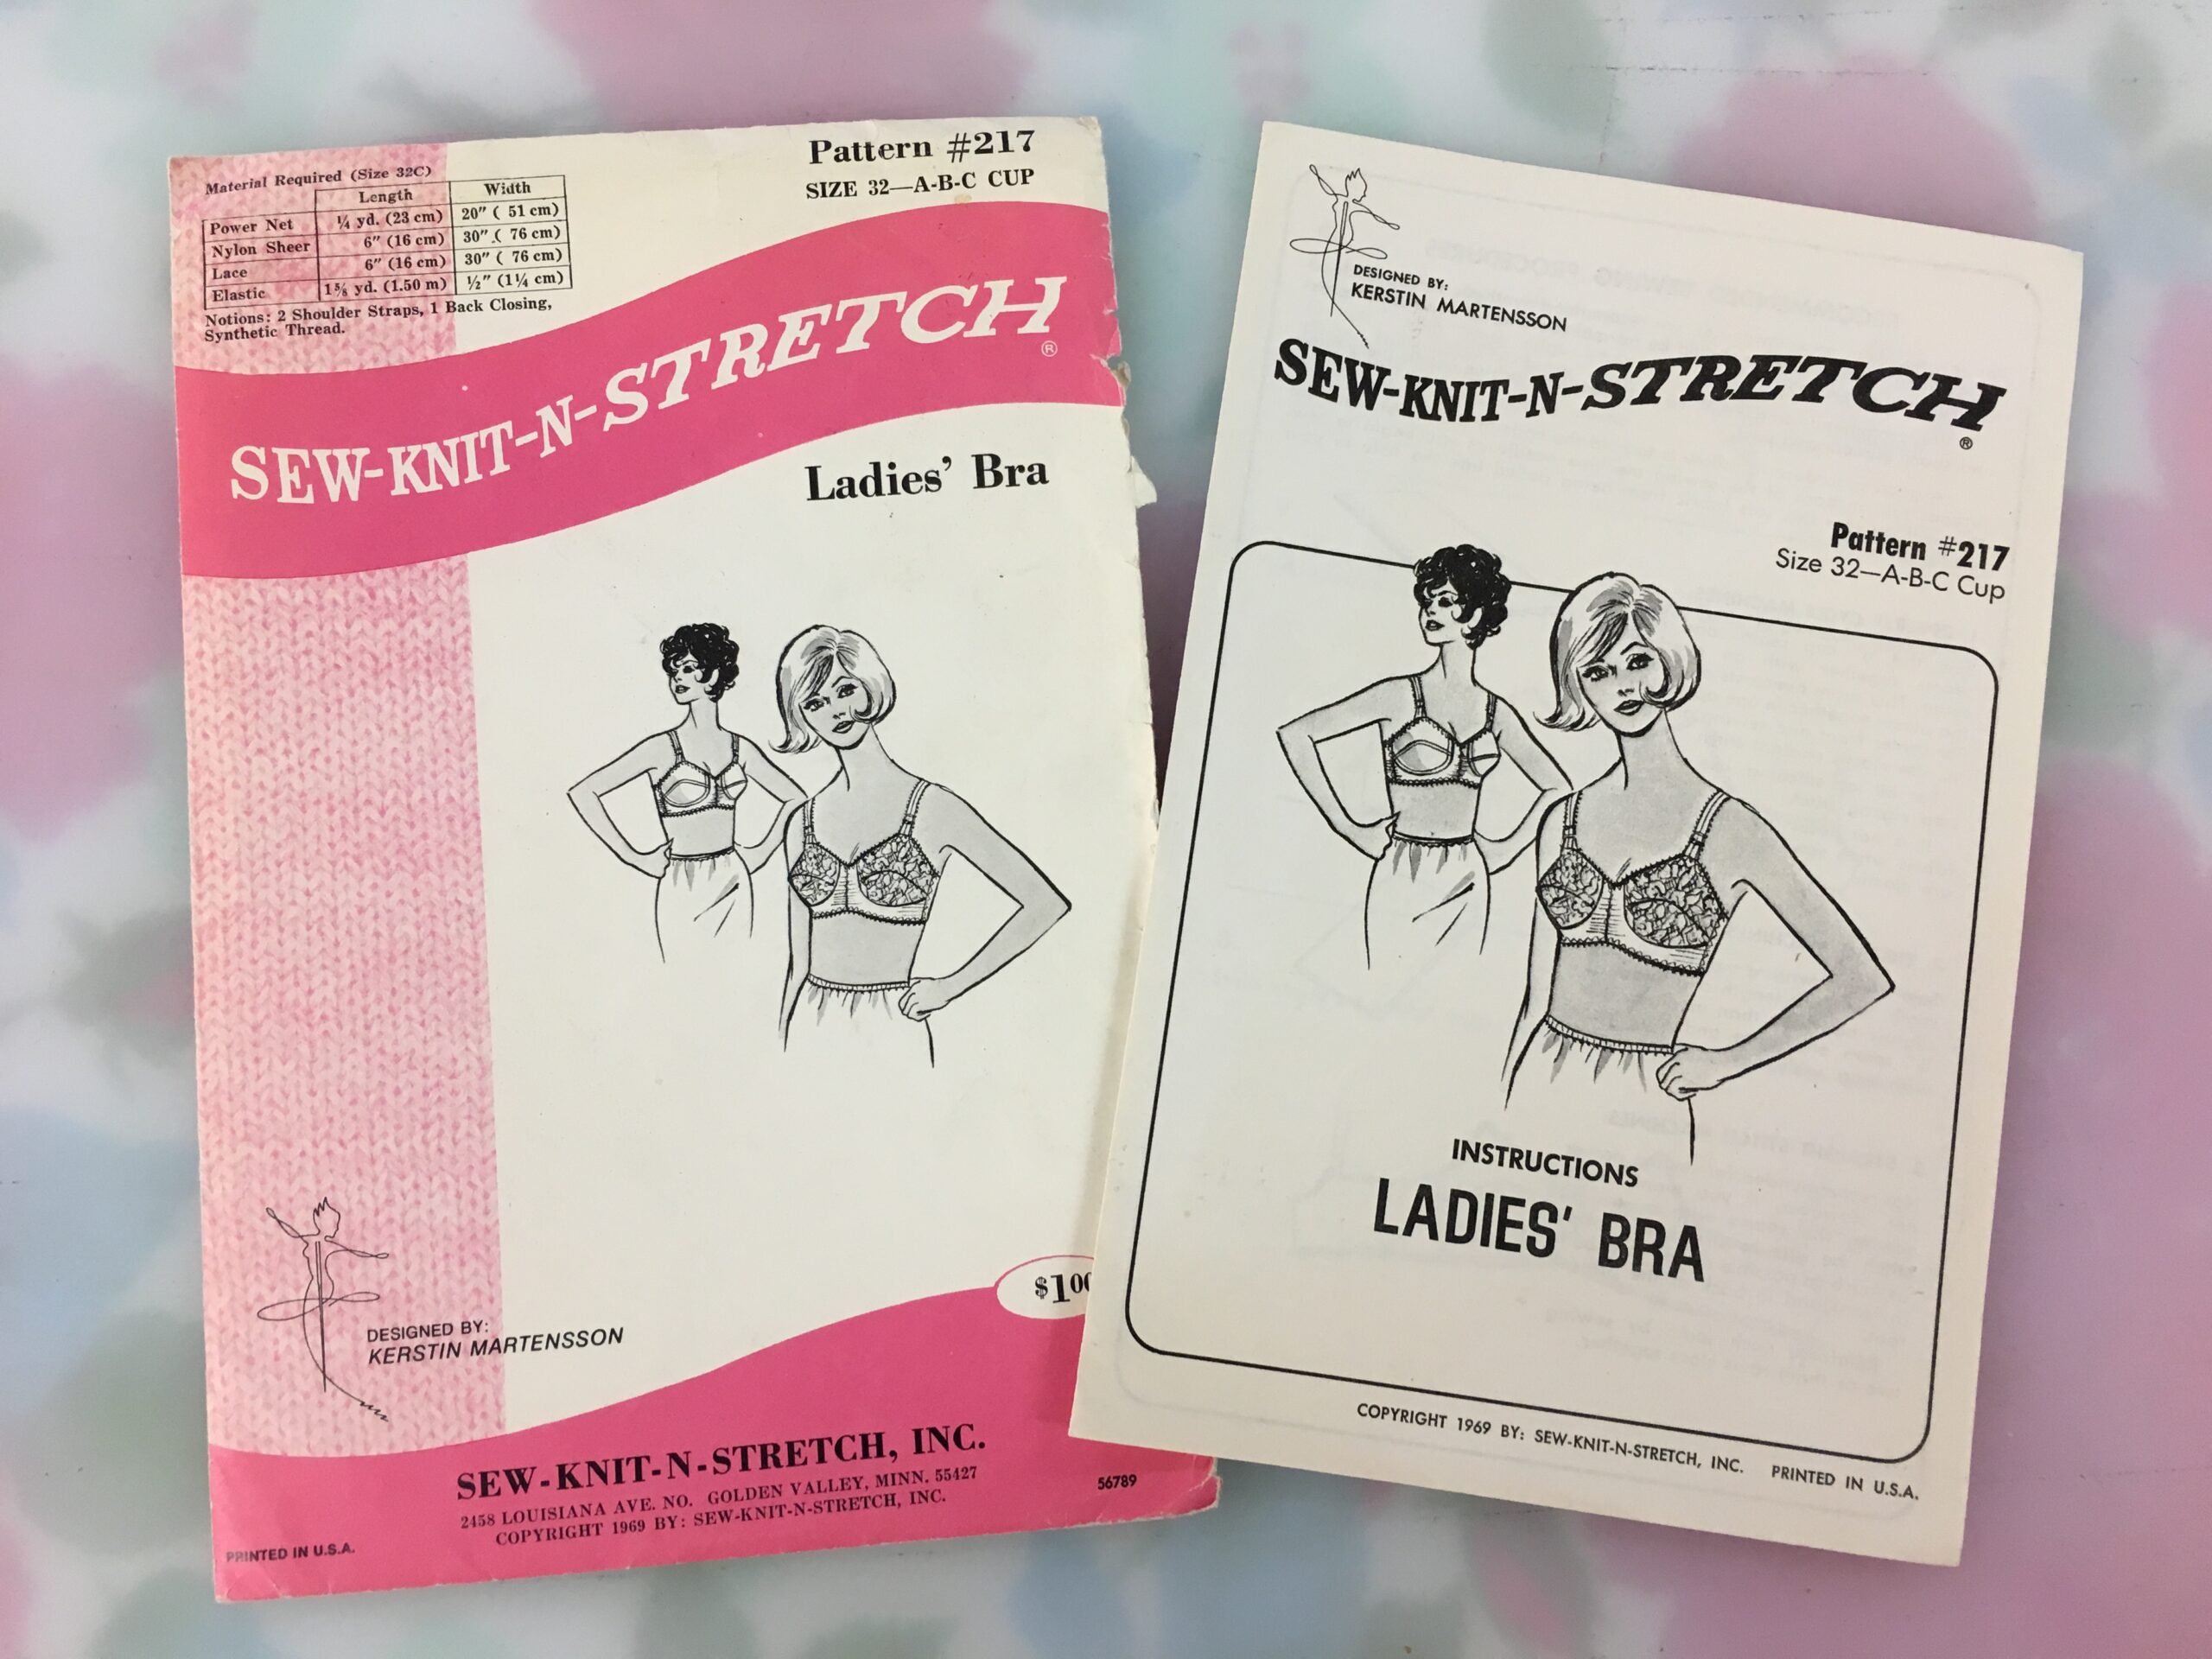 Kwik Sew 2101 1990s Misses Underwire Bra and Garter Belt Pattern Womens  Lingerie Sewing Pattern Bust 32 A 38 DD Xs S M L UNCUT 